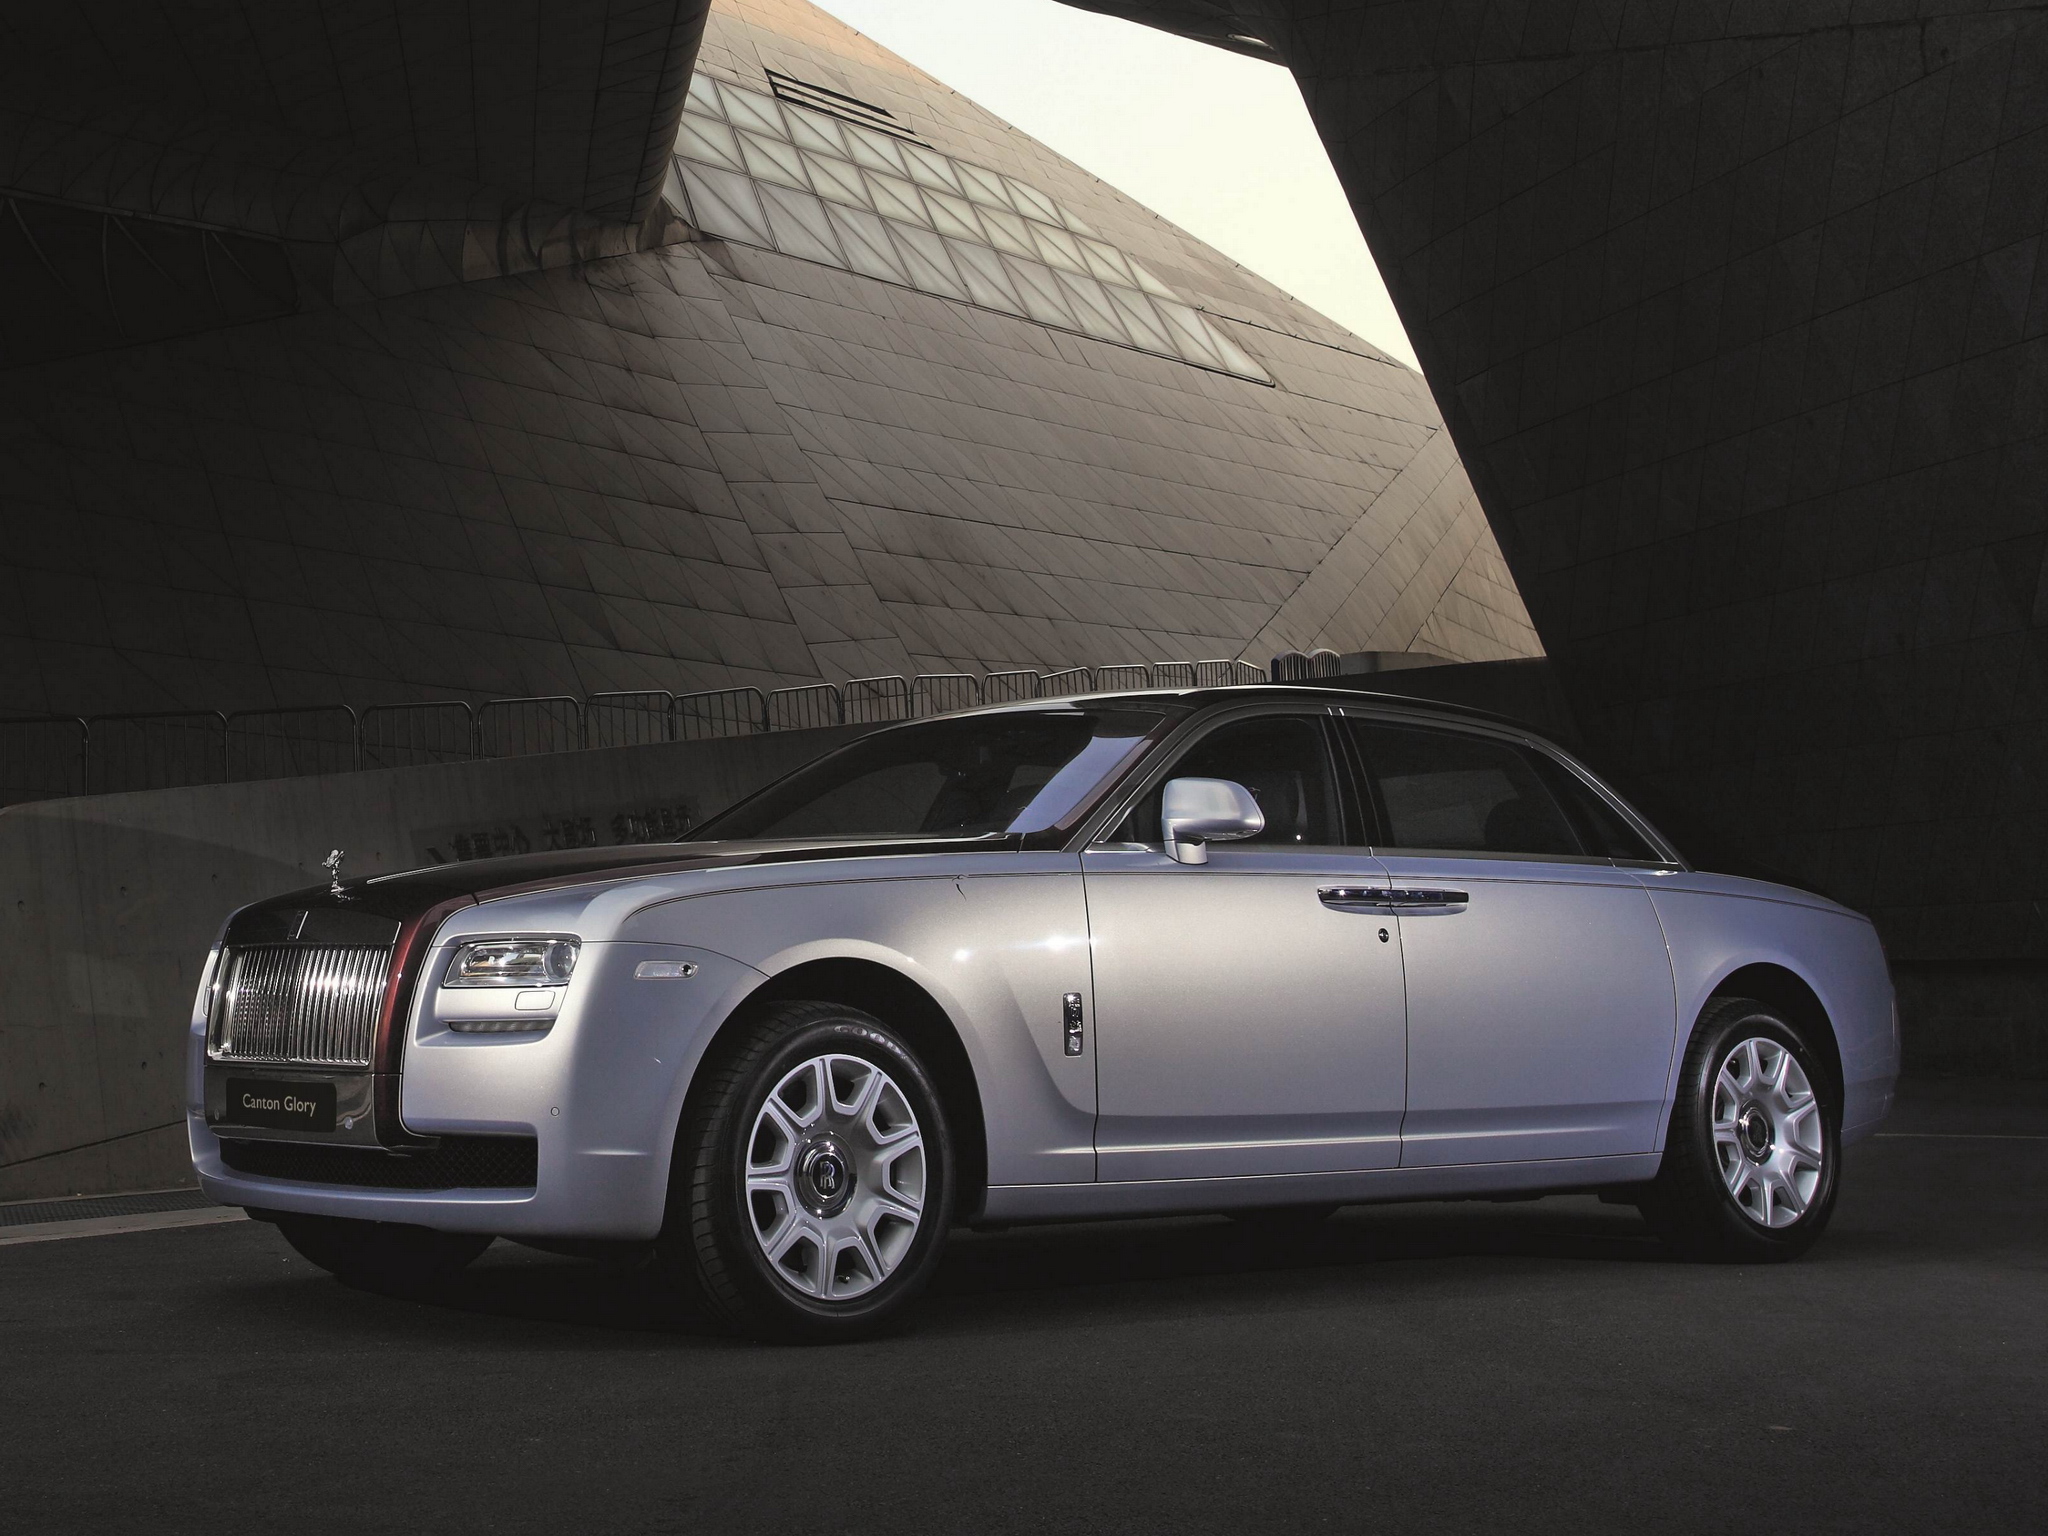 2013, Rolls, Royce, Ghost, Canton, Glory, Bespoke, Luxury Wallpaper